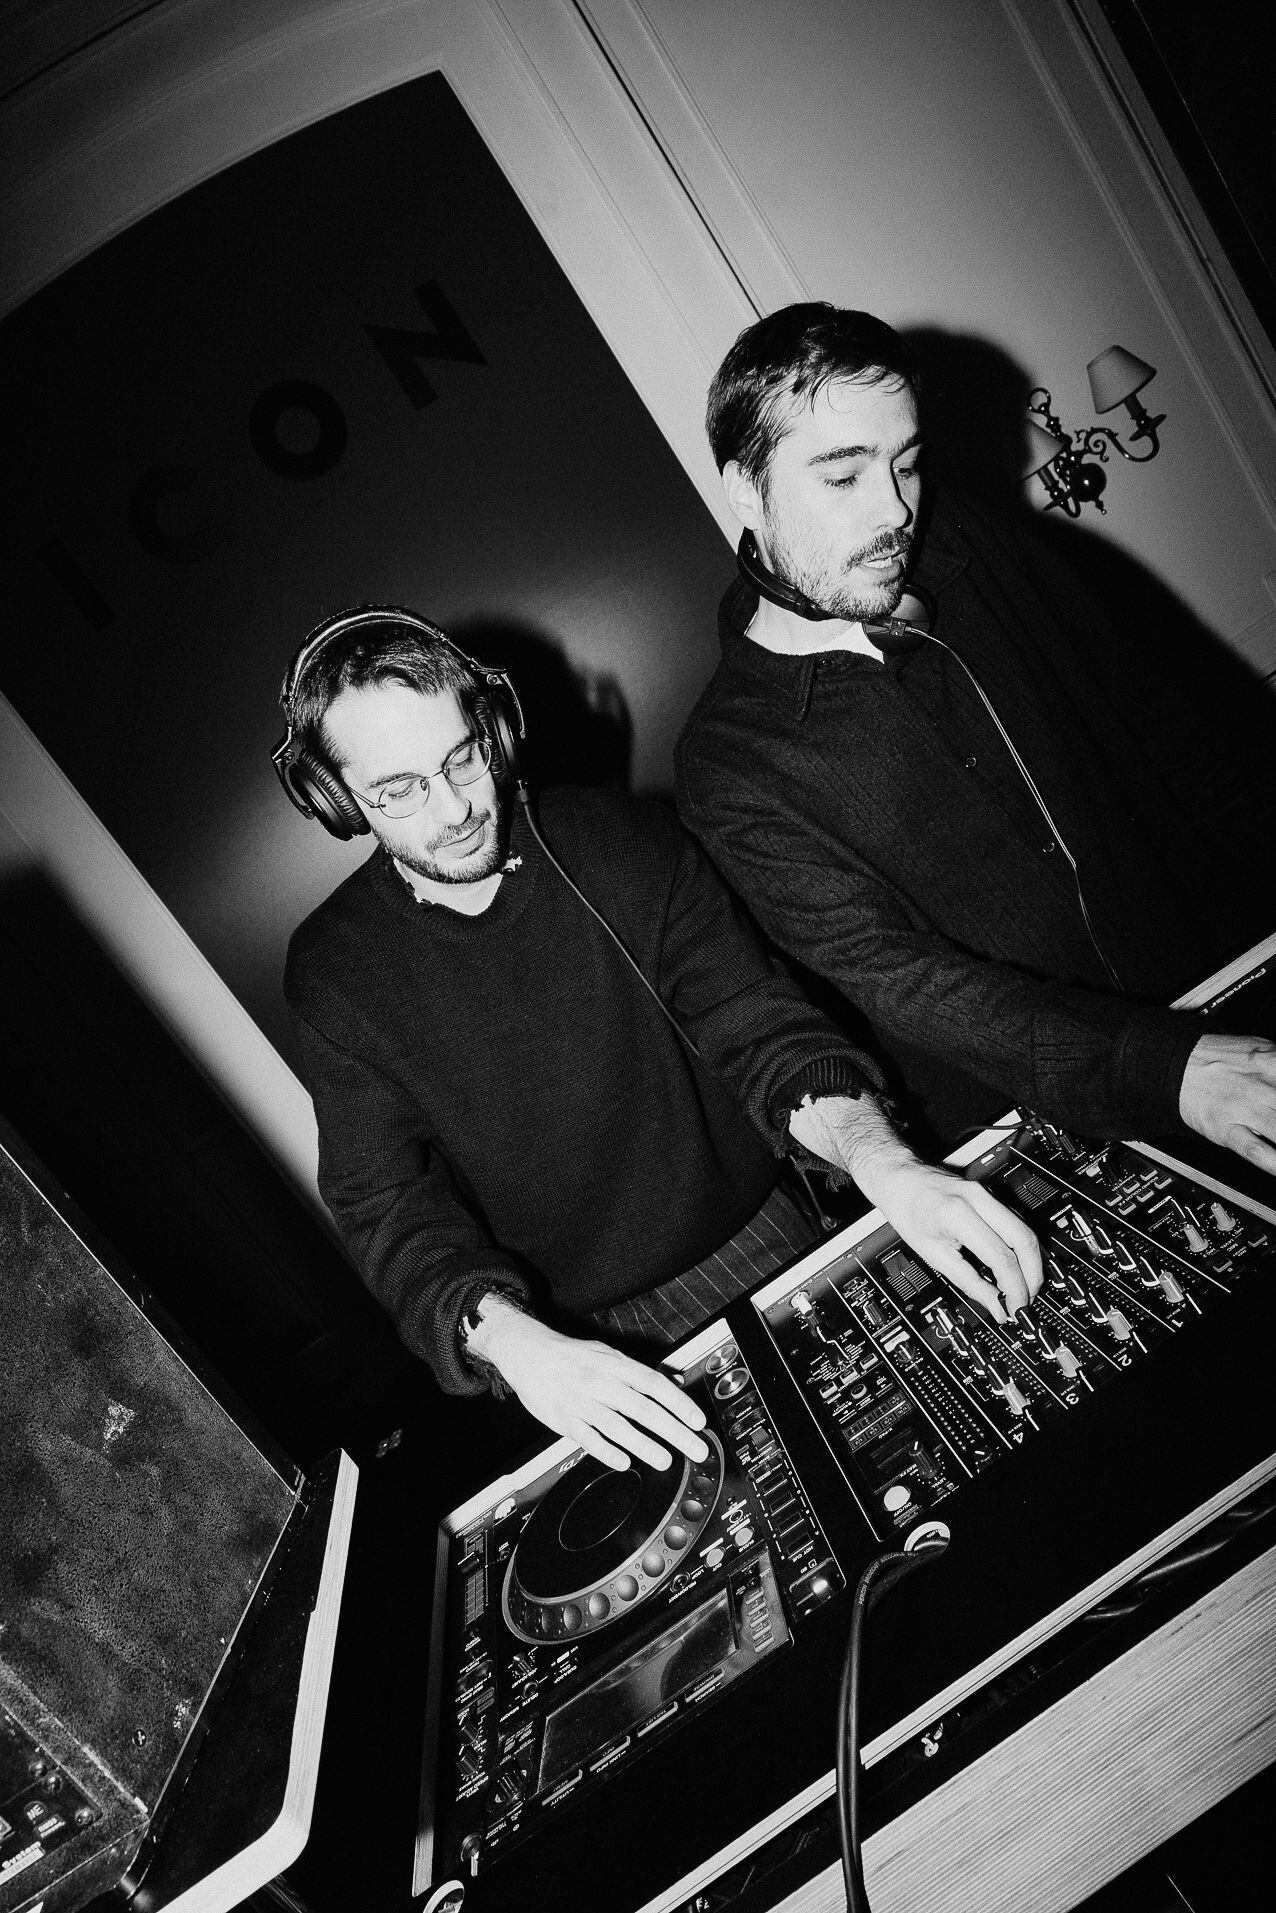 Los hermanos Eloi y Yayo Vázquez, más conocidos como el dúo de DJs El cuerpo del disco.